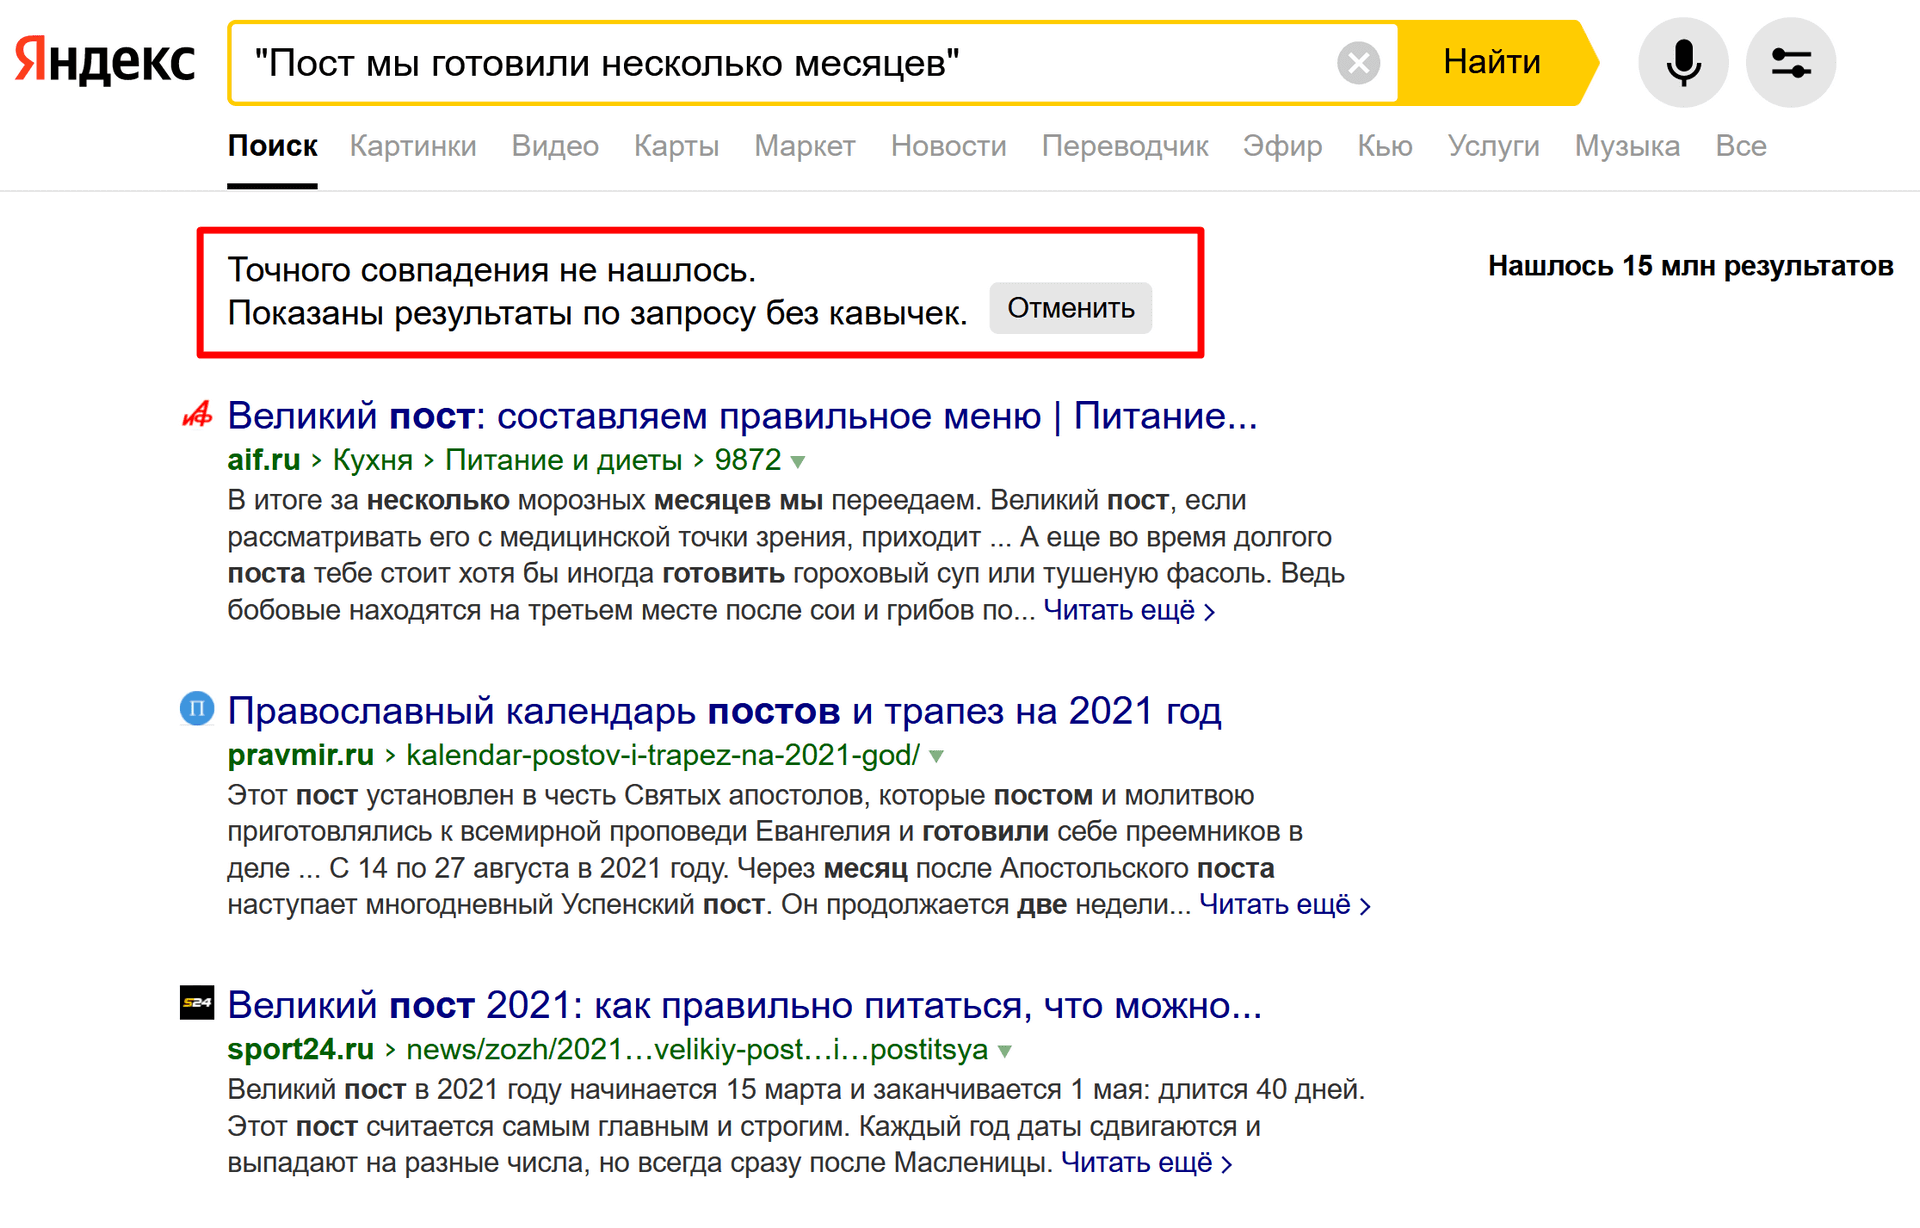 Яндекс качество поиска